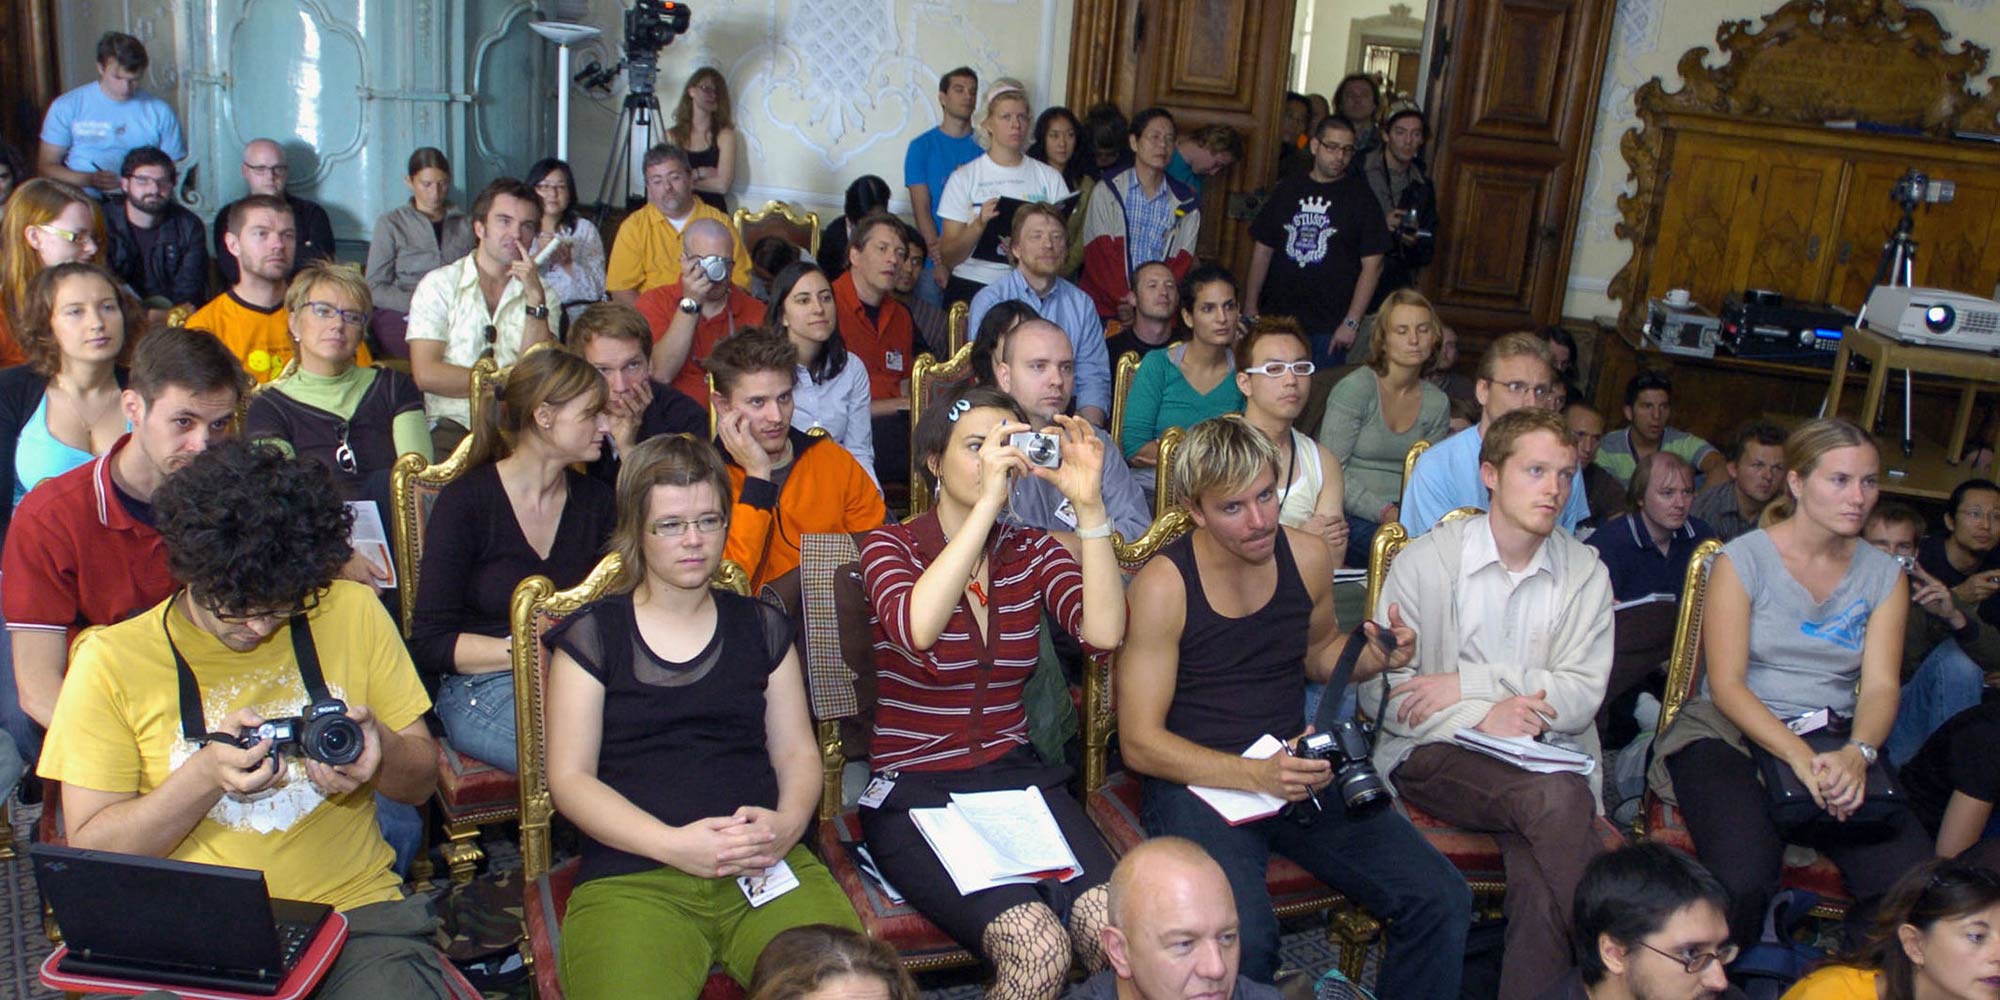 Pixelspaces 2006 – Exkursion in das barocke Stift St. Florian bei Linz mit Meditationen, Lecture-Performances, Installationen, Open-Hardware-Workshops, Führungen durch ein Orgelbauatelier und sogar einer Einführung in die Kunst des Origami.